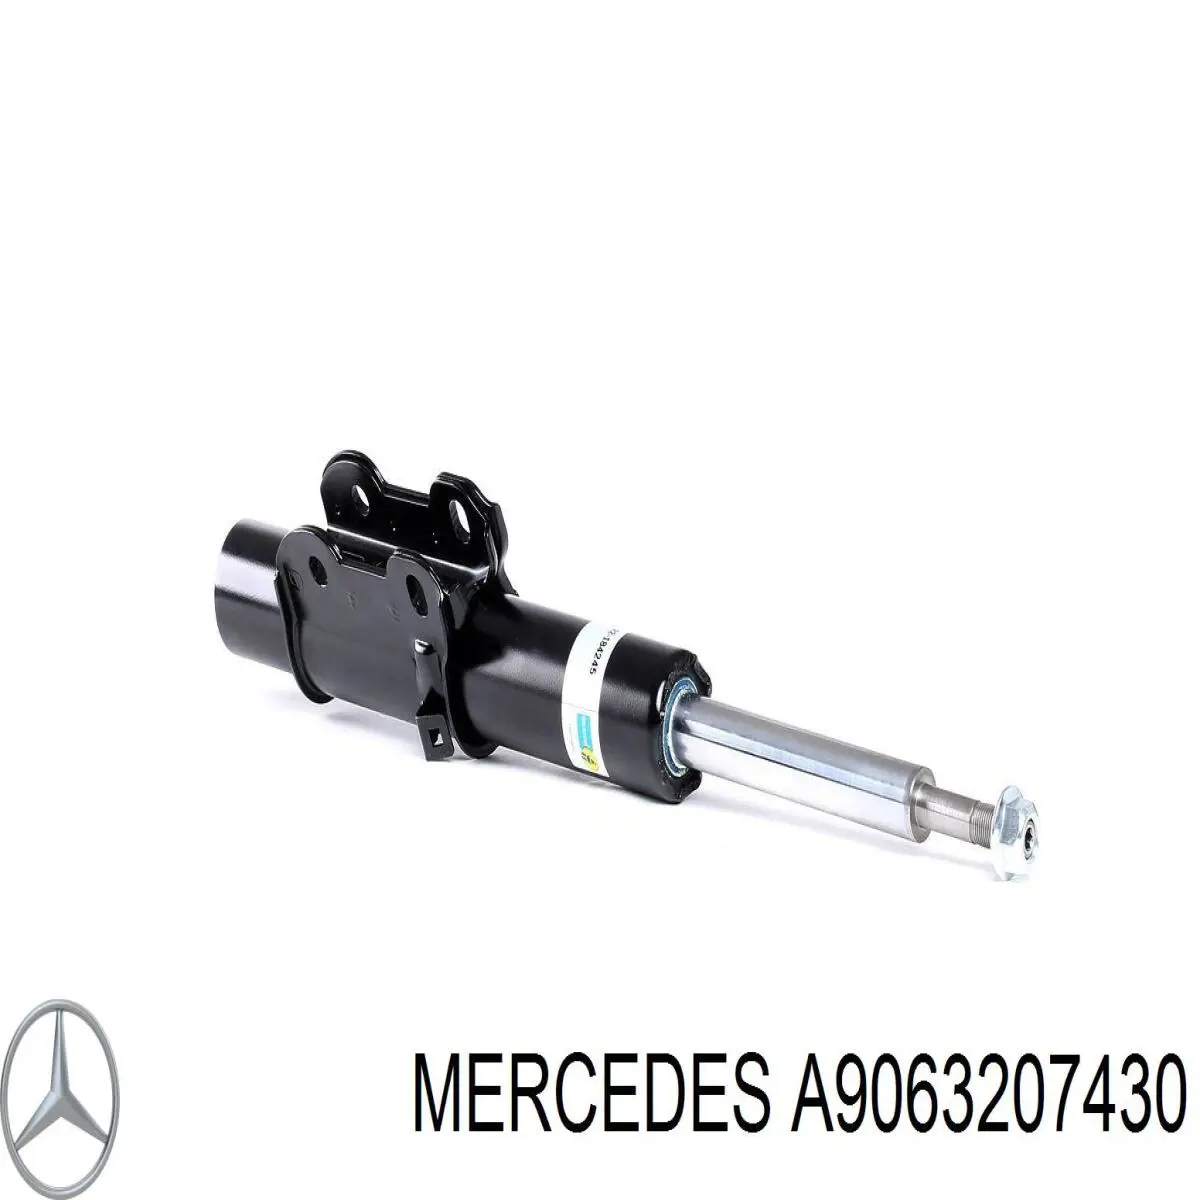 A9063207430 Mercedes amortiguador delantero